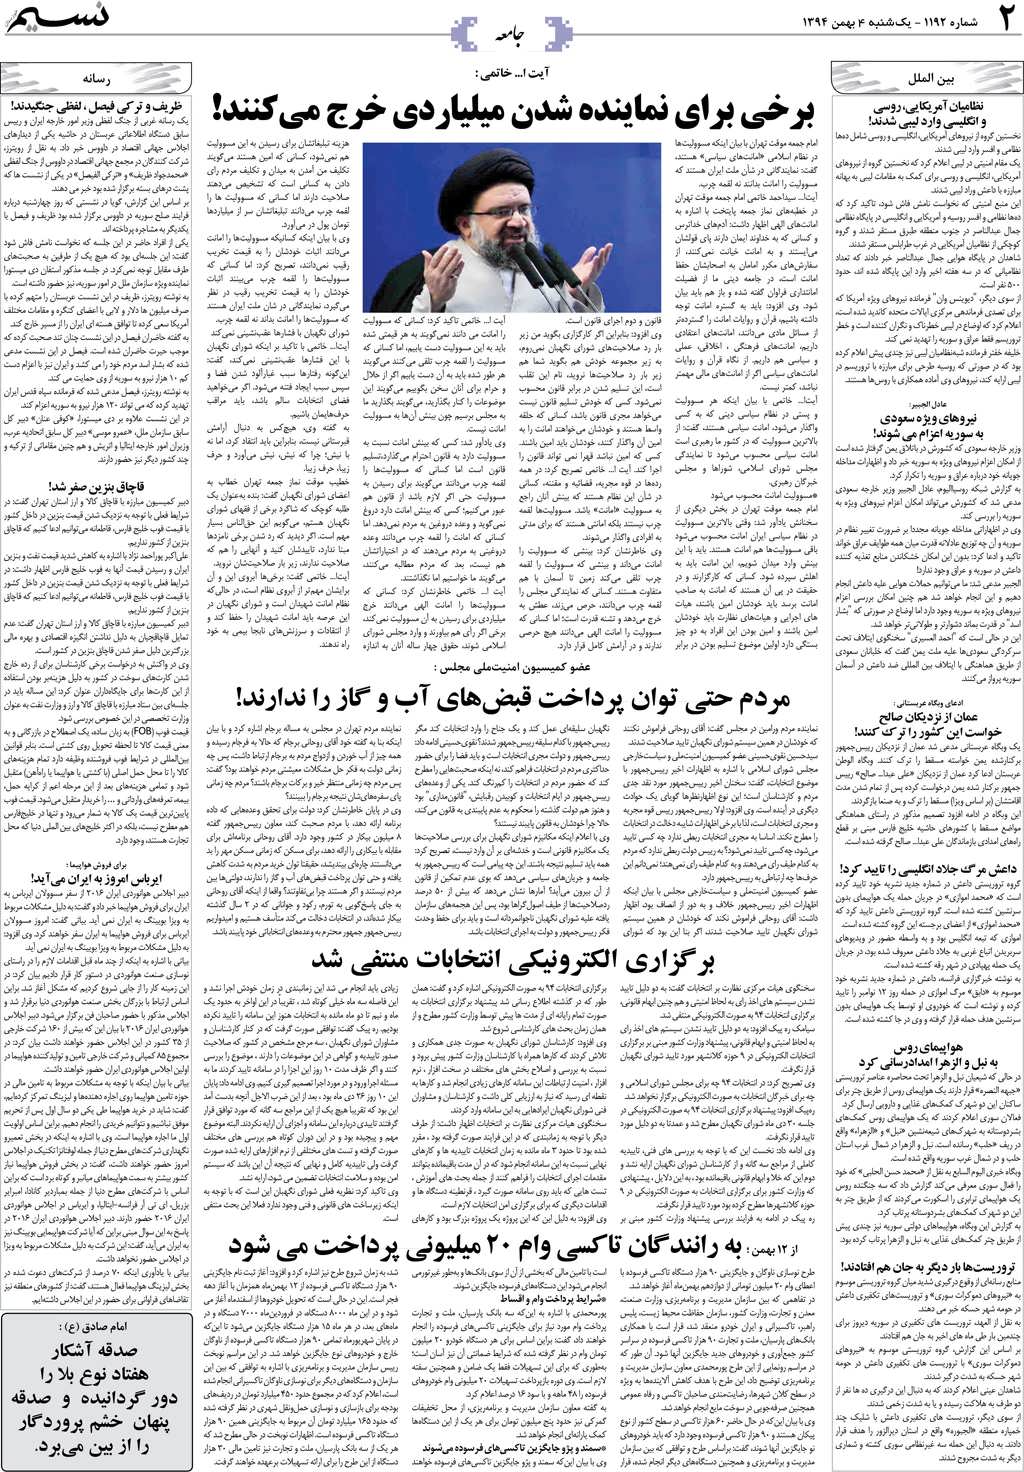 صفحه جامعه روزنامه نسیم شماره 1192